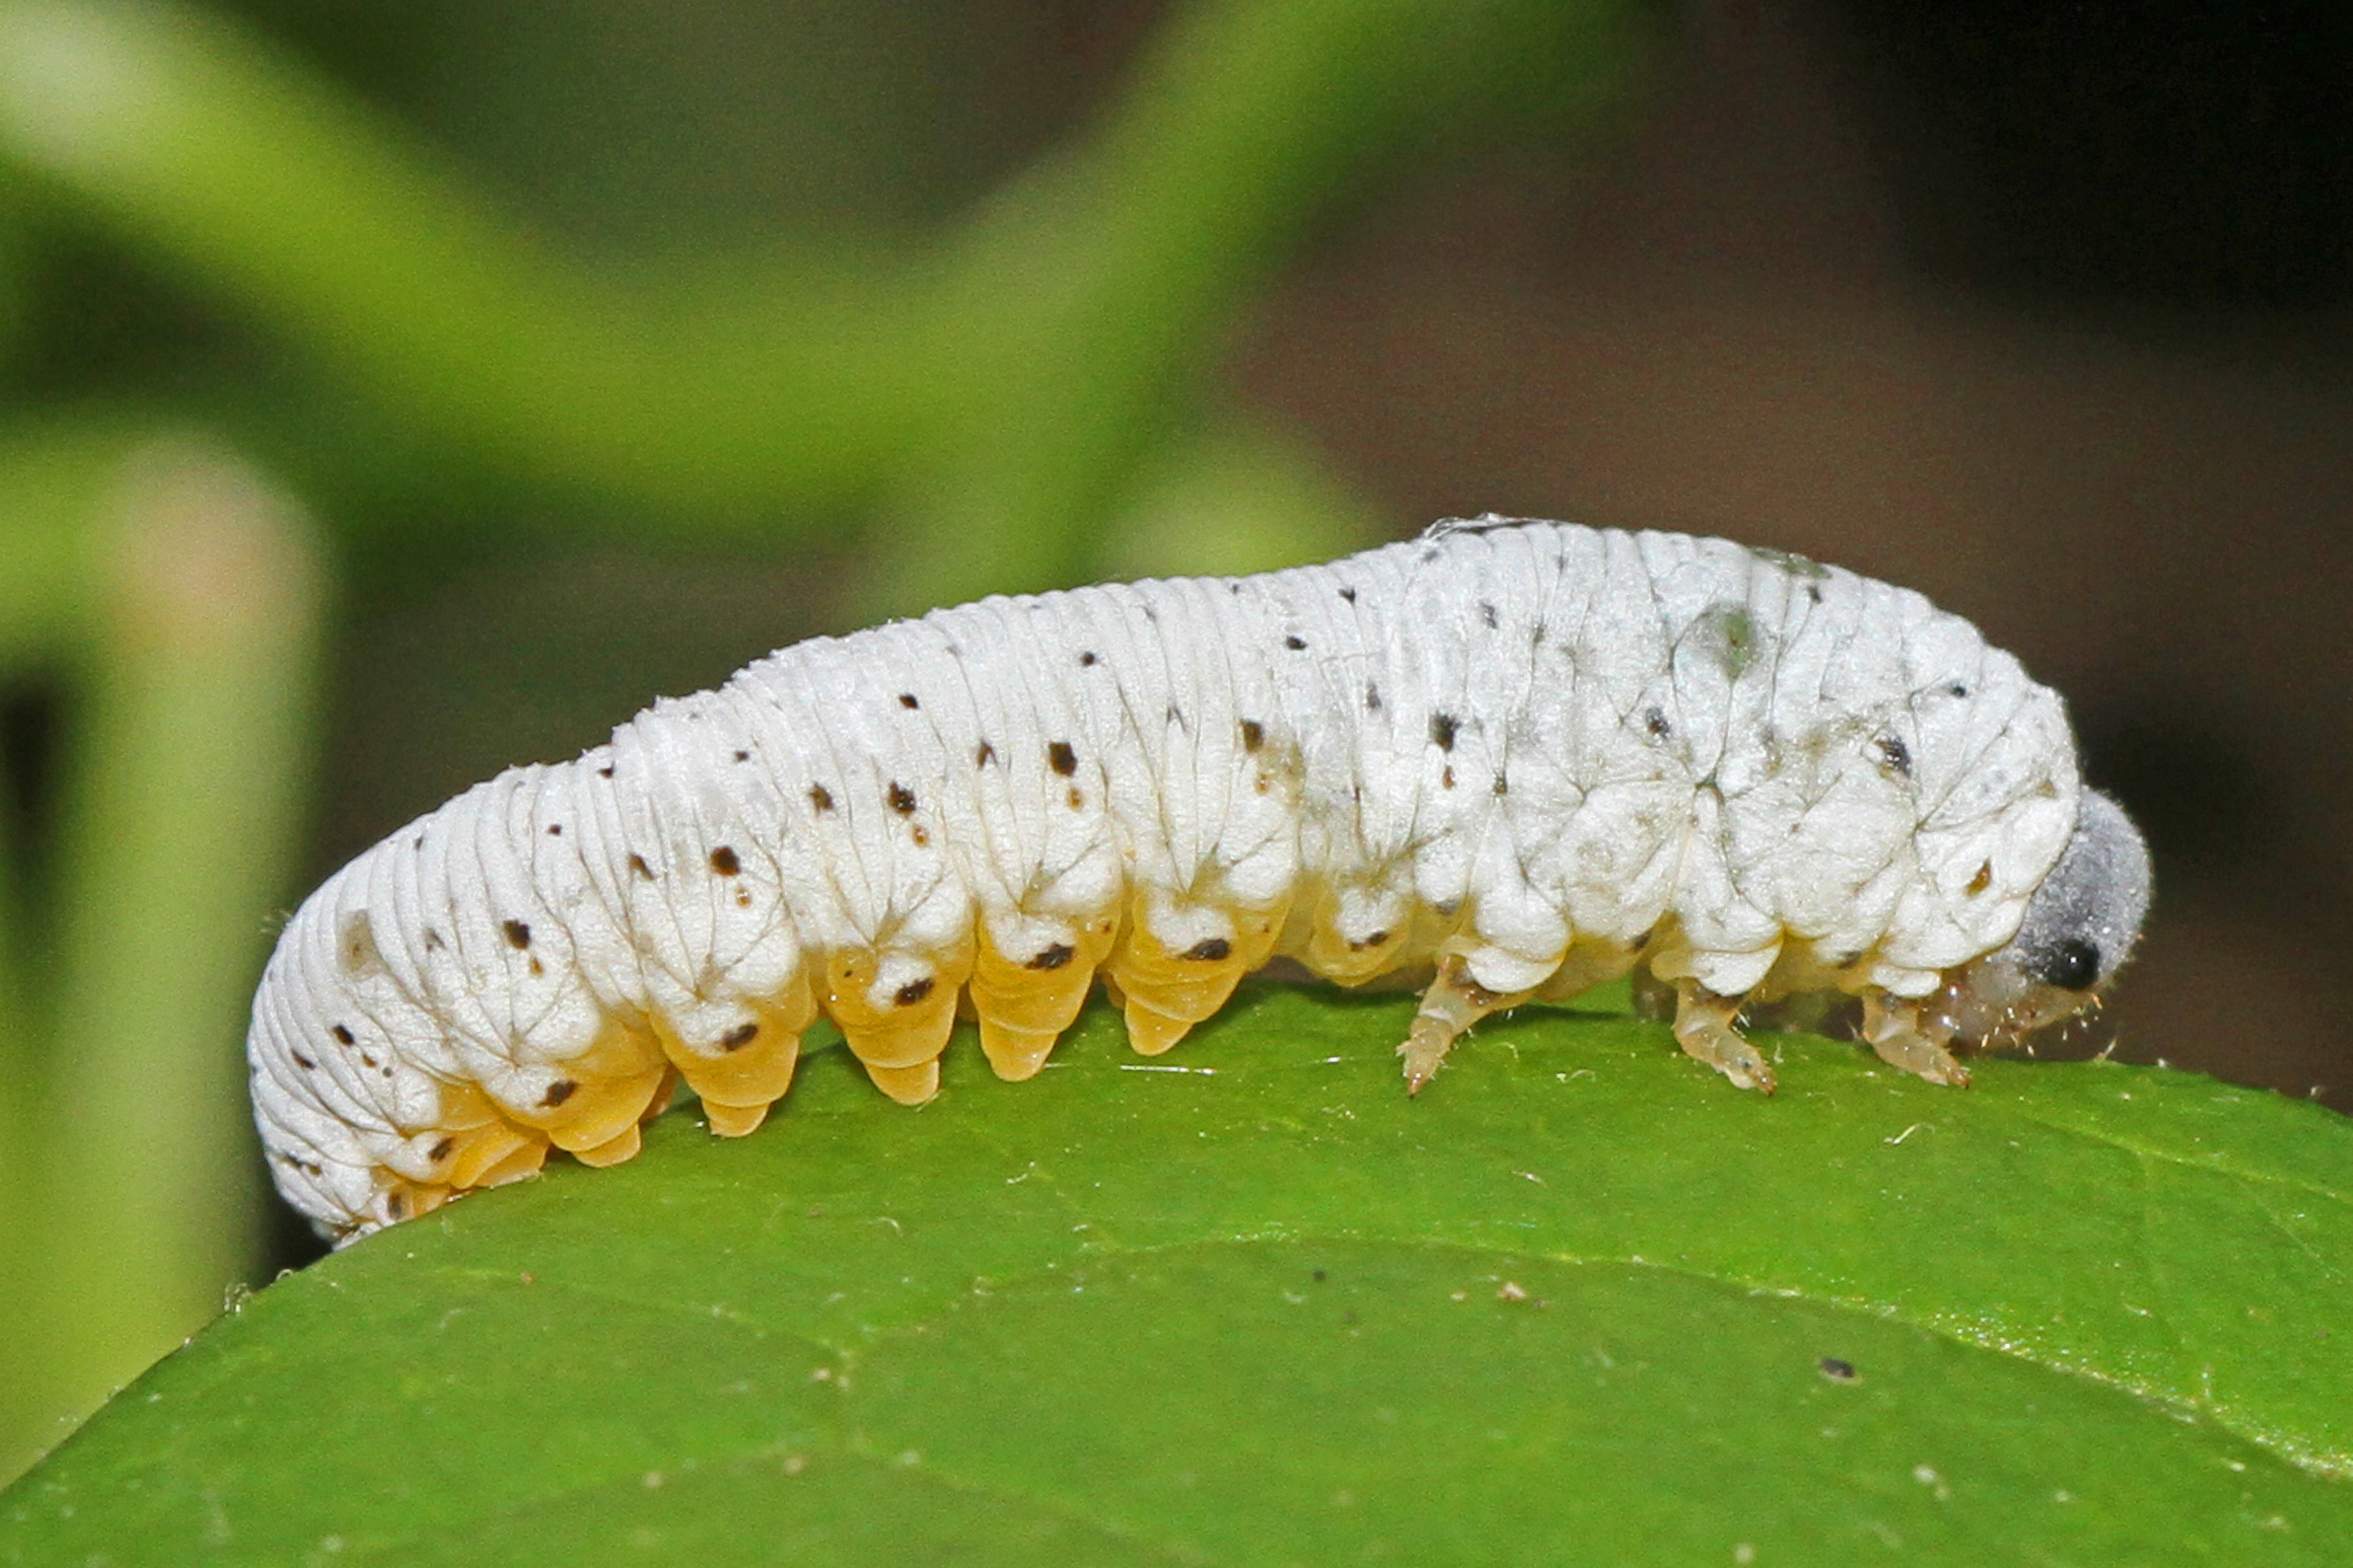 Sawfly larva - ?, Leesylvania State Park, Virginia